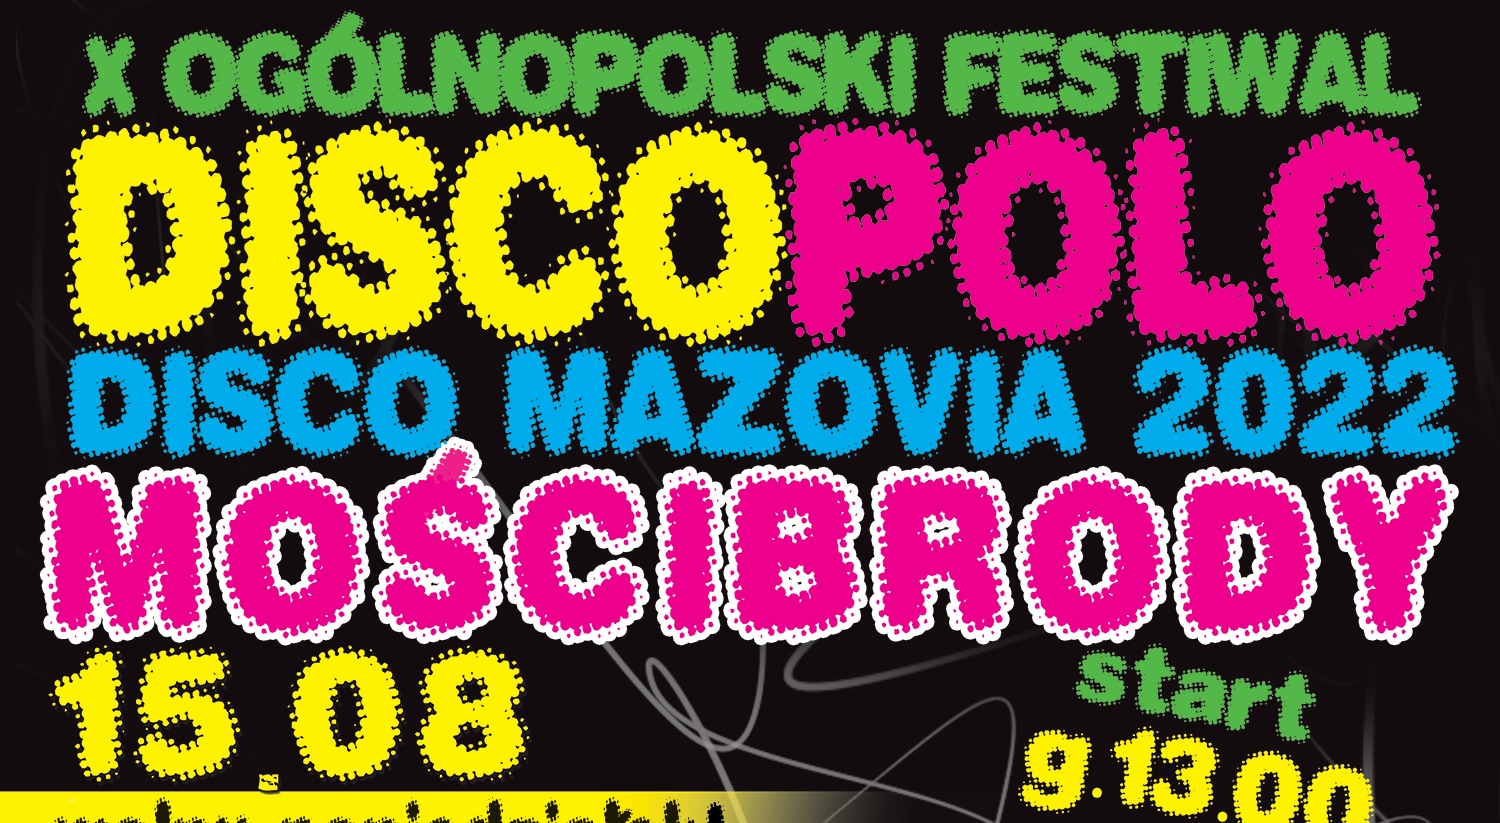 Disco Mazovia - Mościbrody już w poniedziałek 15 sierpnia (dzień wolny)! Lista wykonawców, bilety, transmisja LIVE